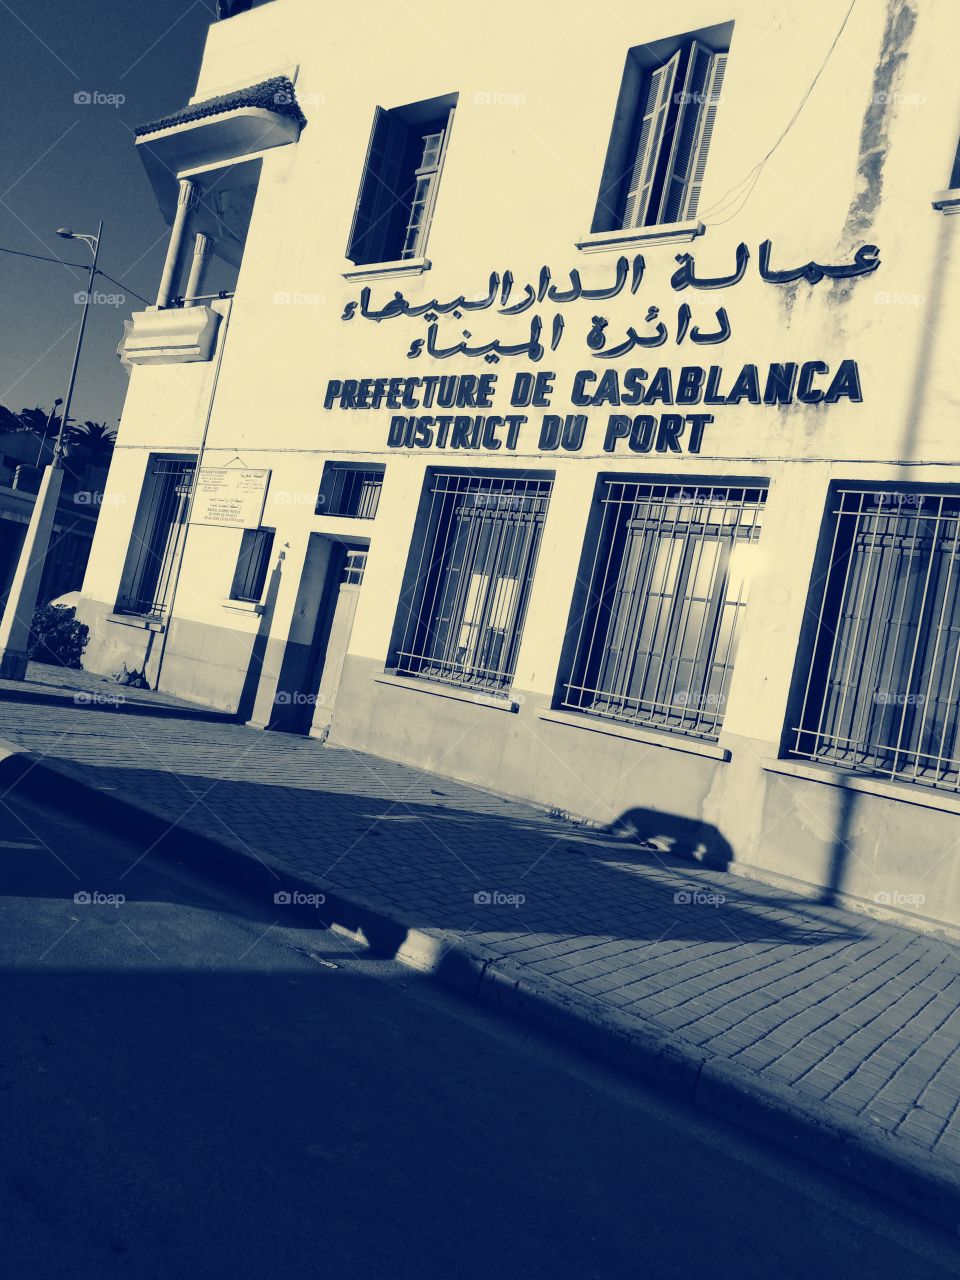 Prefecture de Casablanca